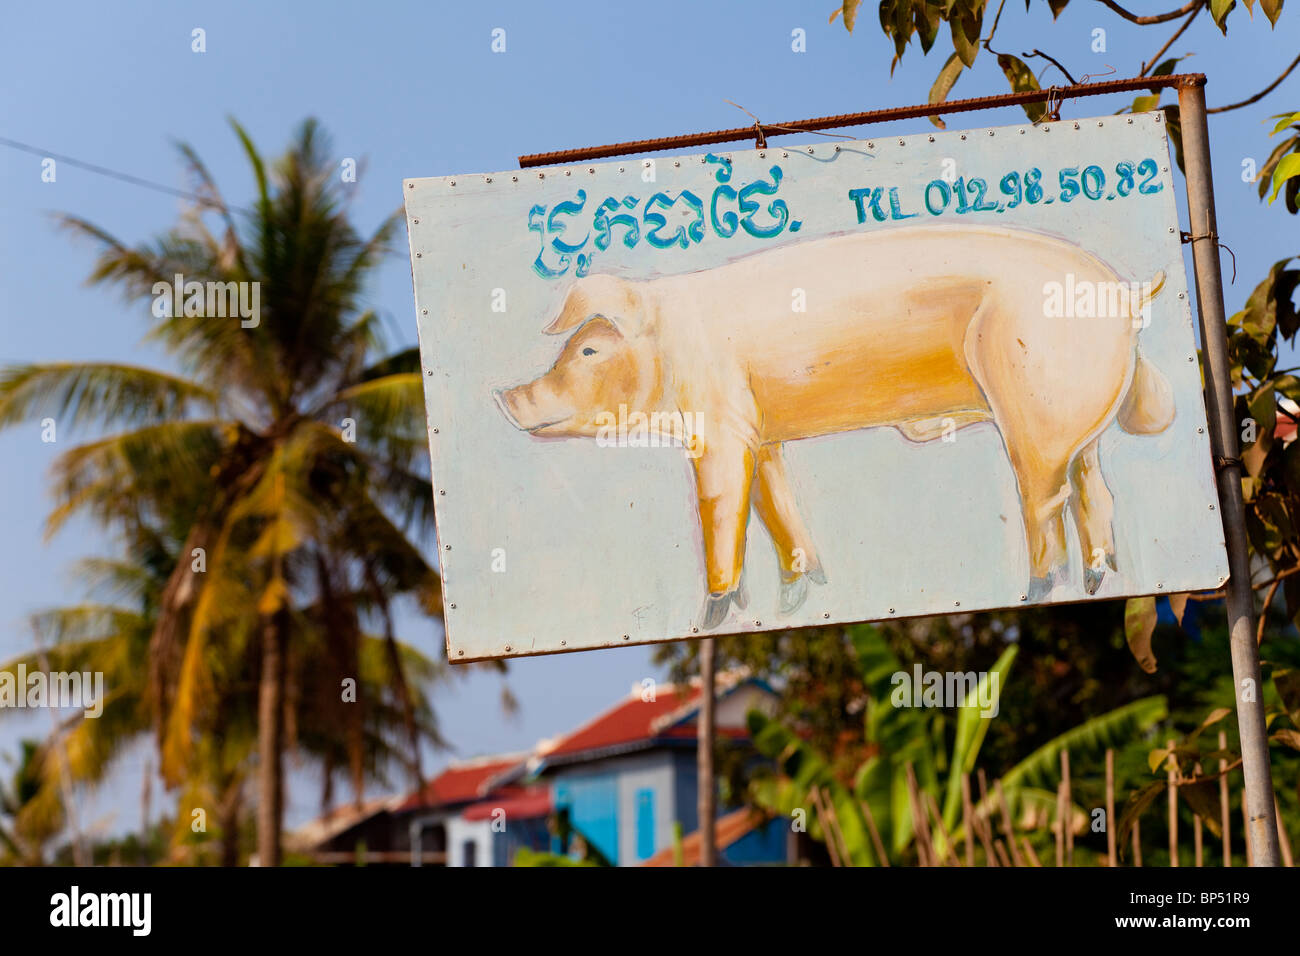 À la main la boutique sign advertising l'élevage porcin - Province de Kandal, Cambodge Banque D'Images